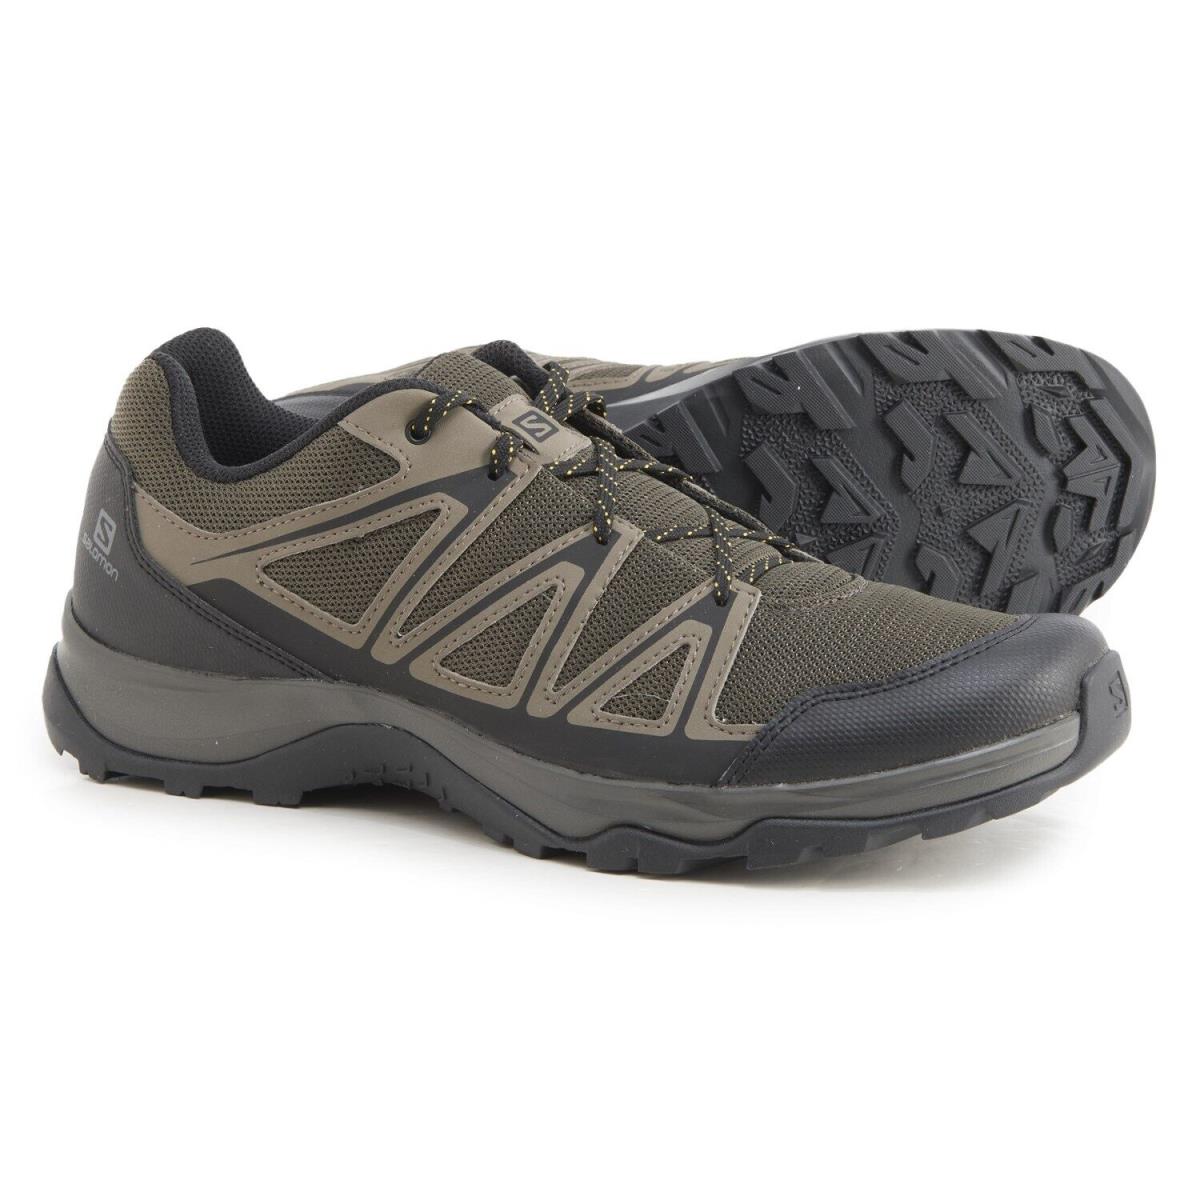 Salomon Barrakee Hiking Shoes For Men Size 9 - Beluga/ Bungee